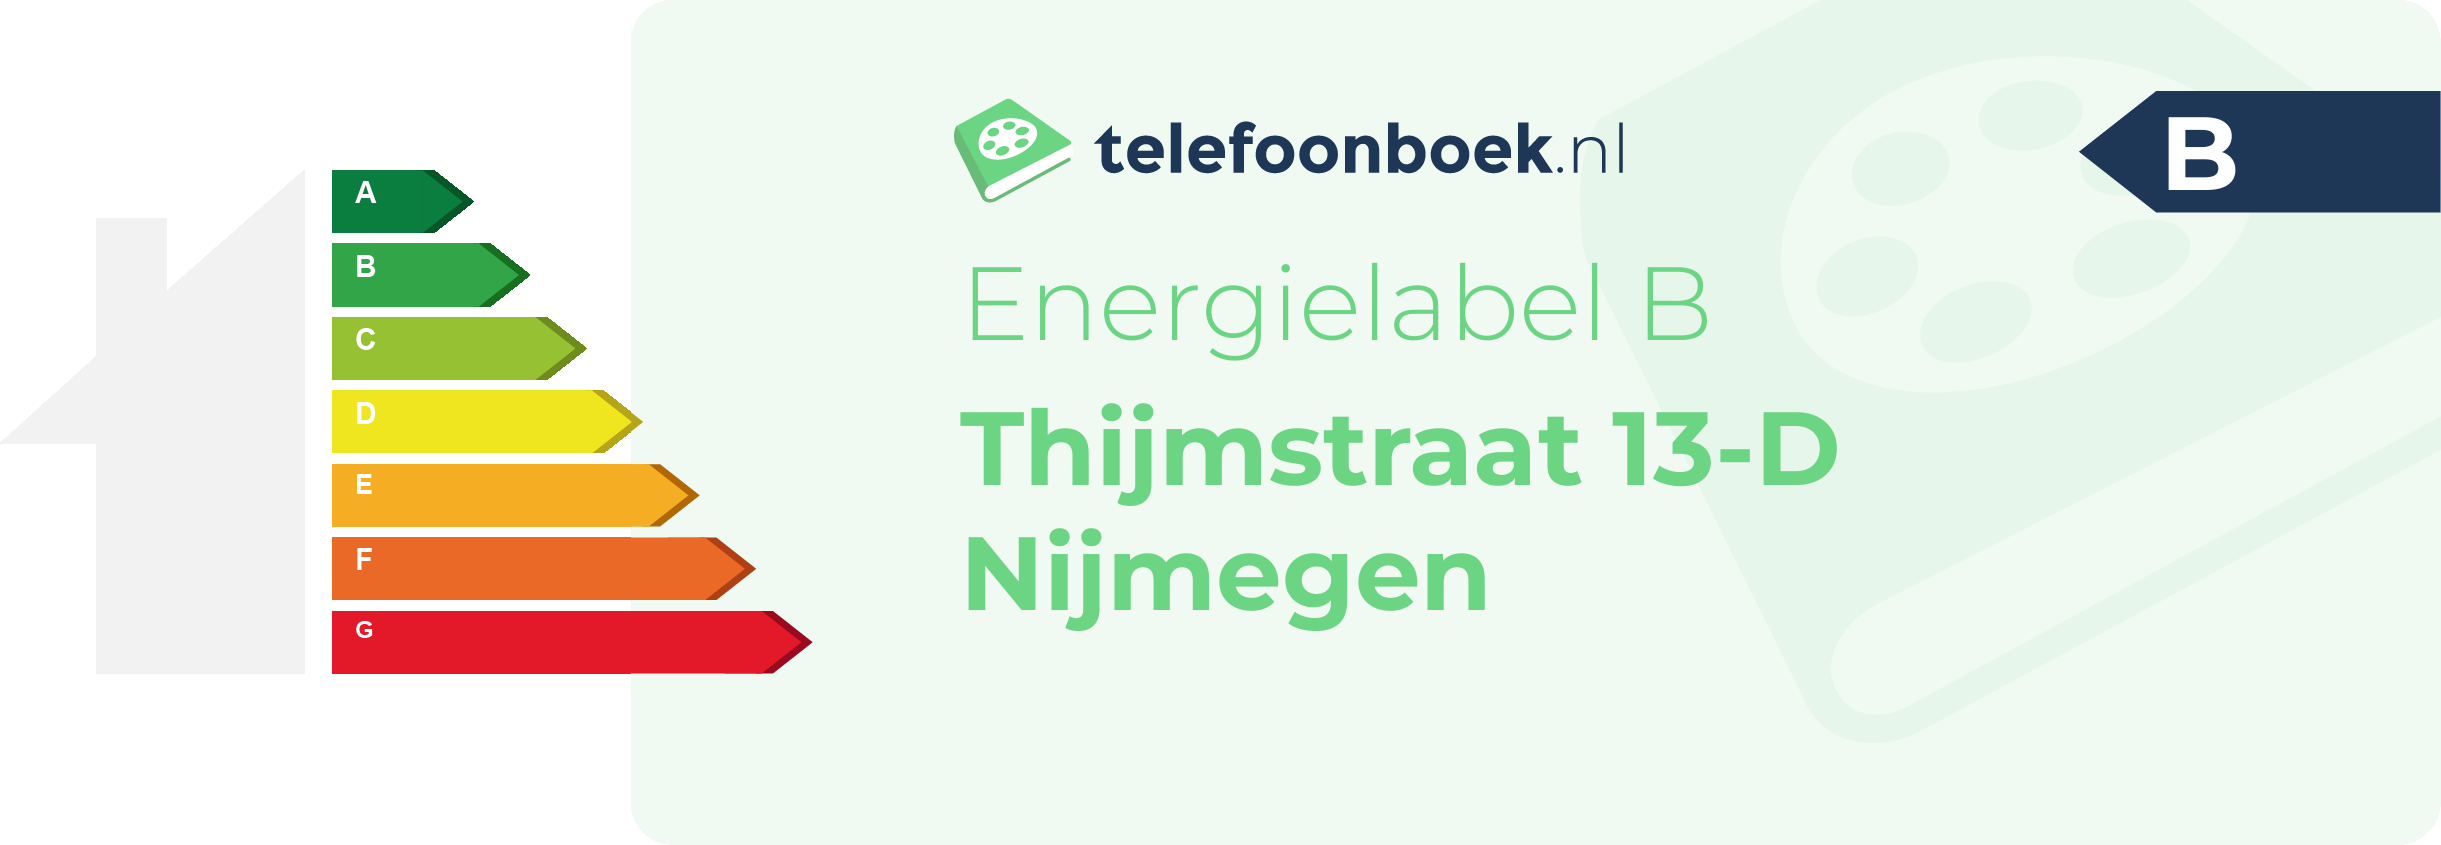 Energielabel Thijmstraat 13-D Nijmegen